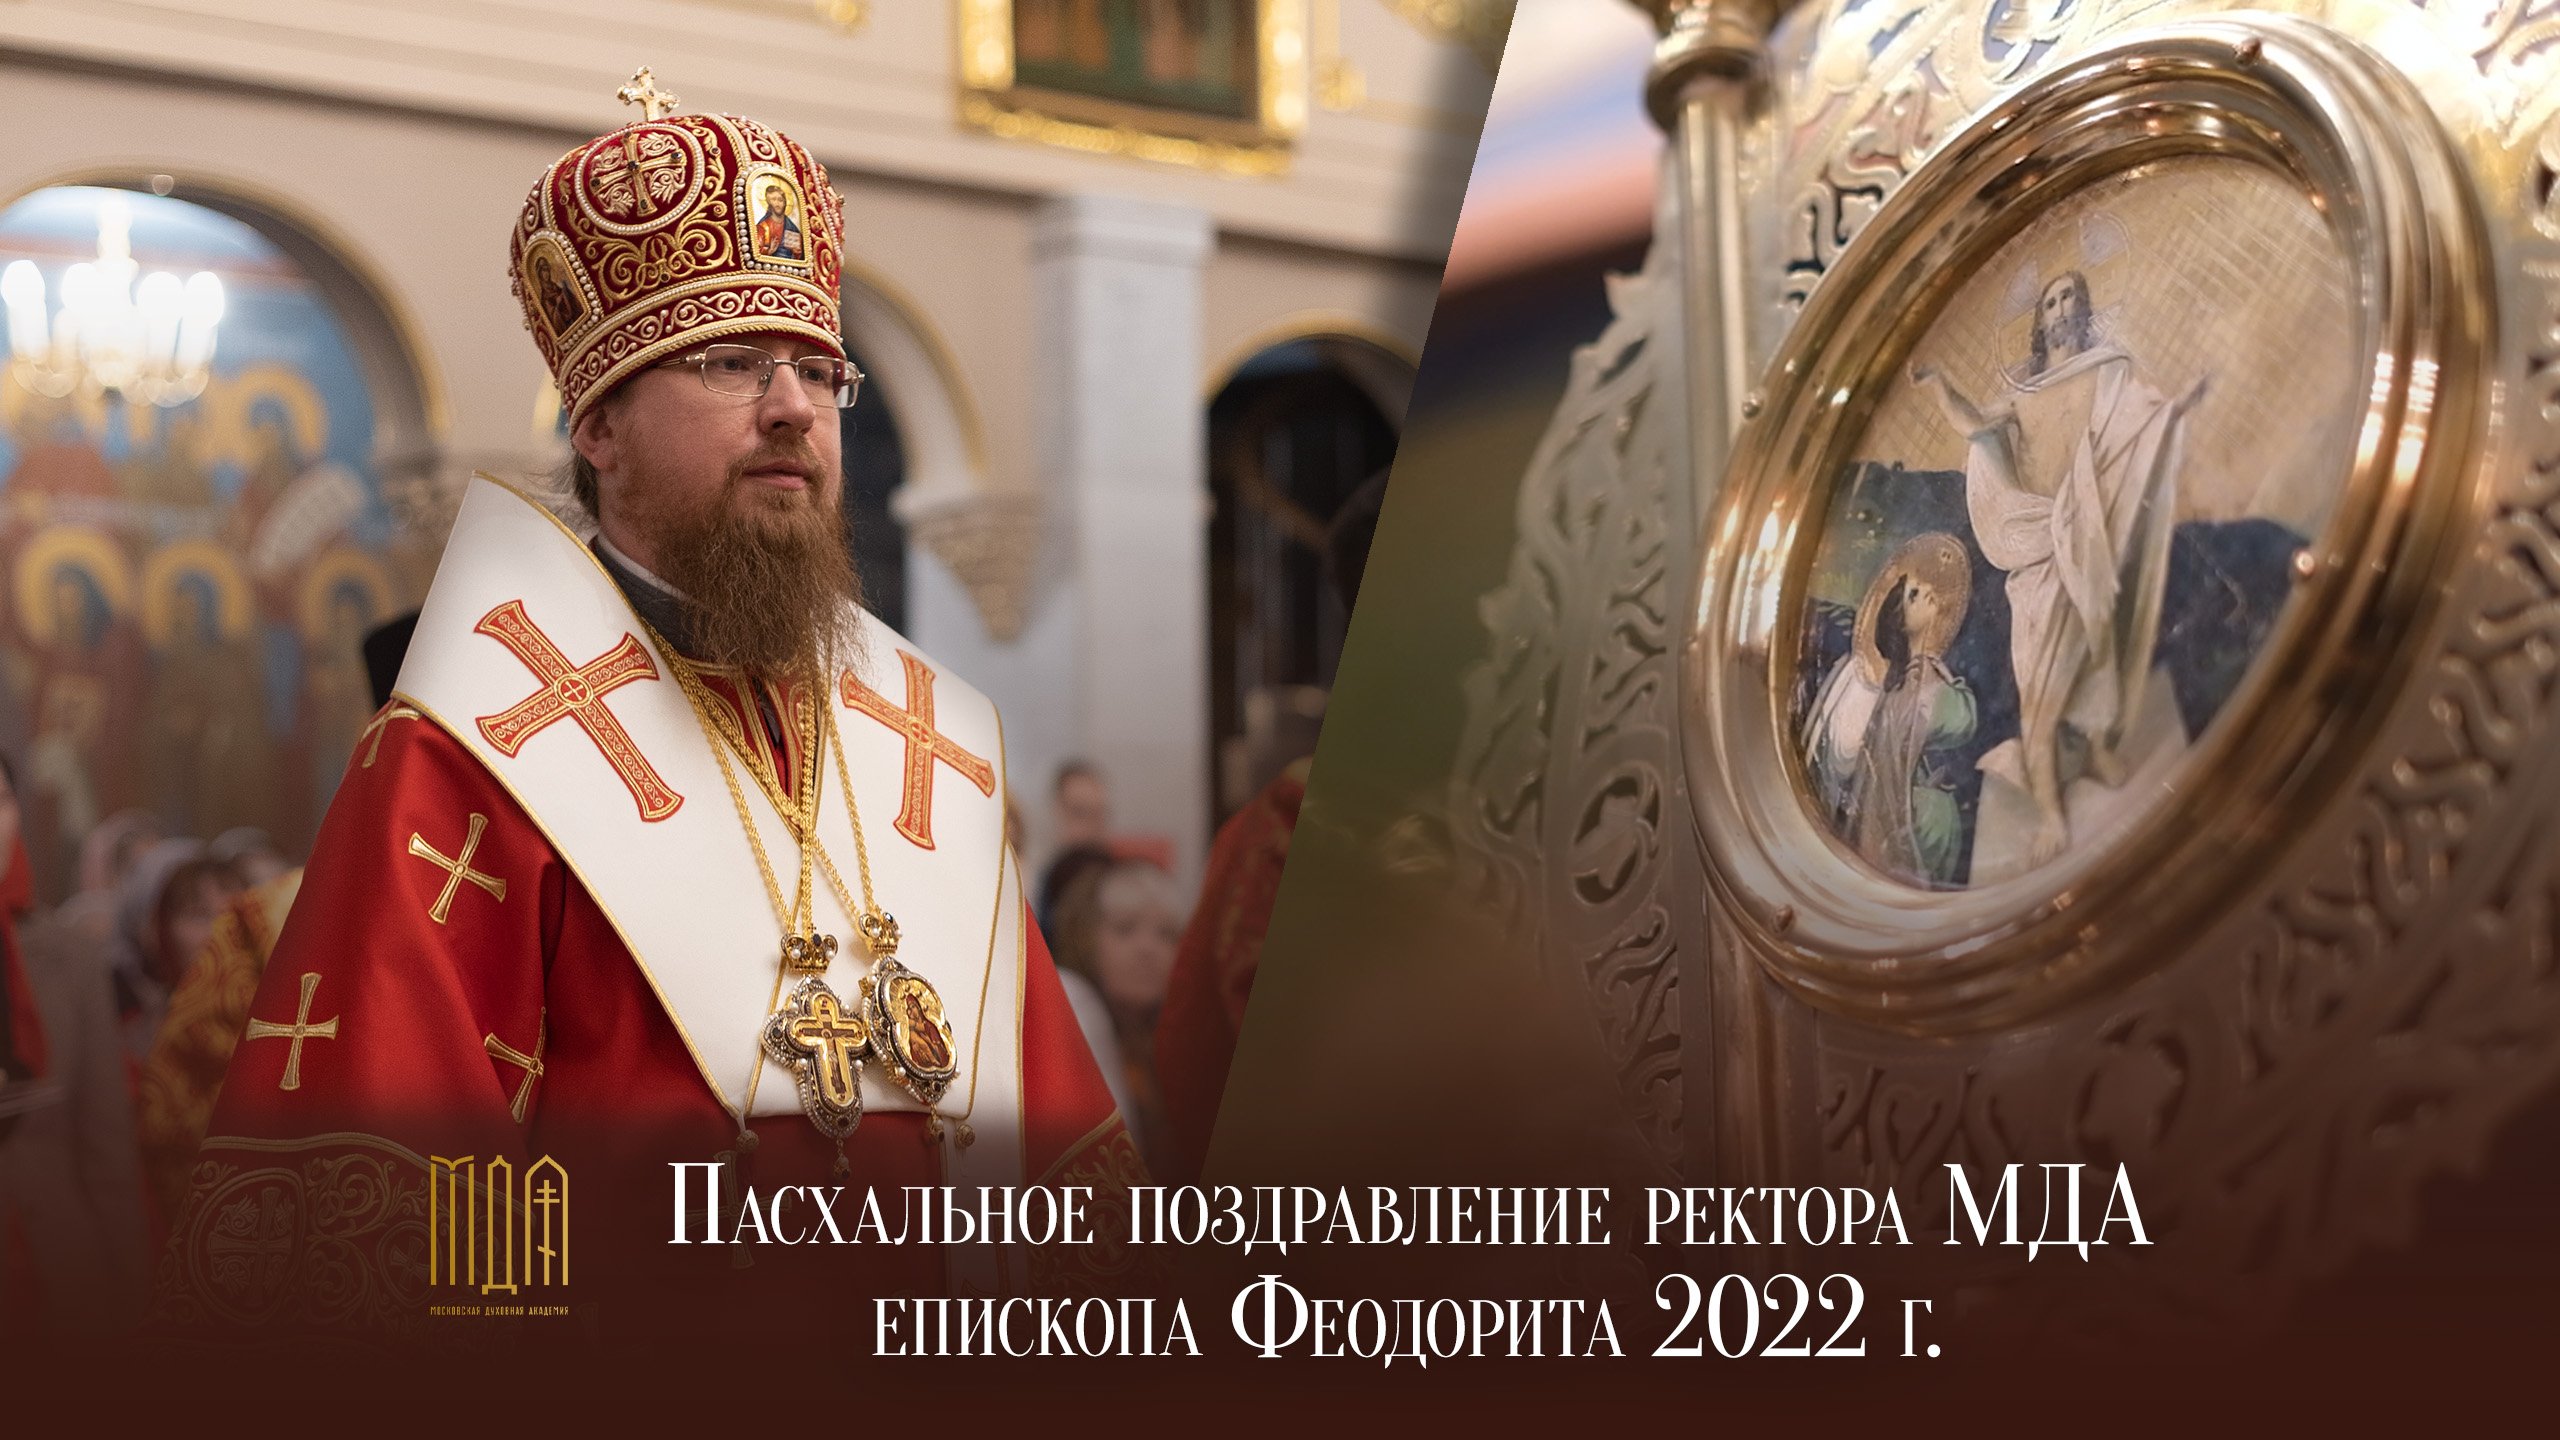 Пасхальное поздравление ректора МДА епископа Феодорита 2022 г.